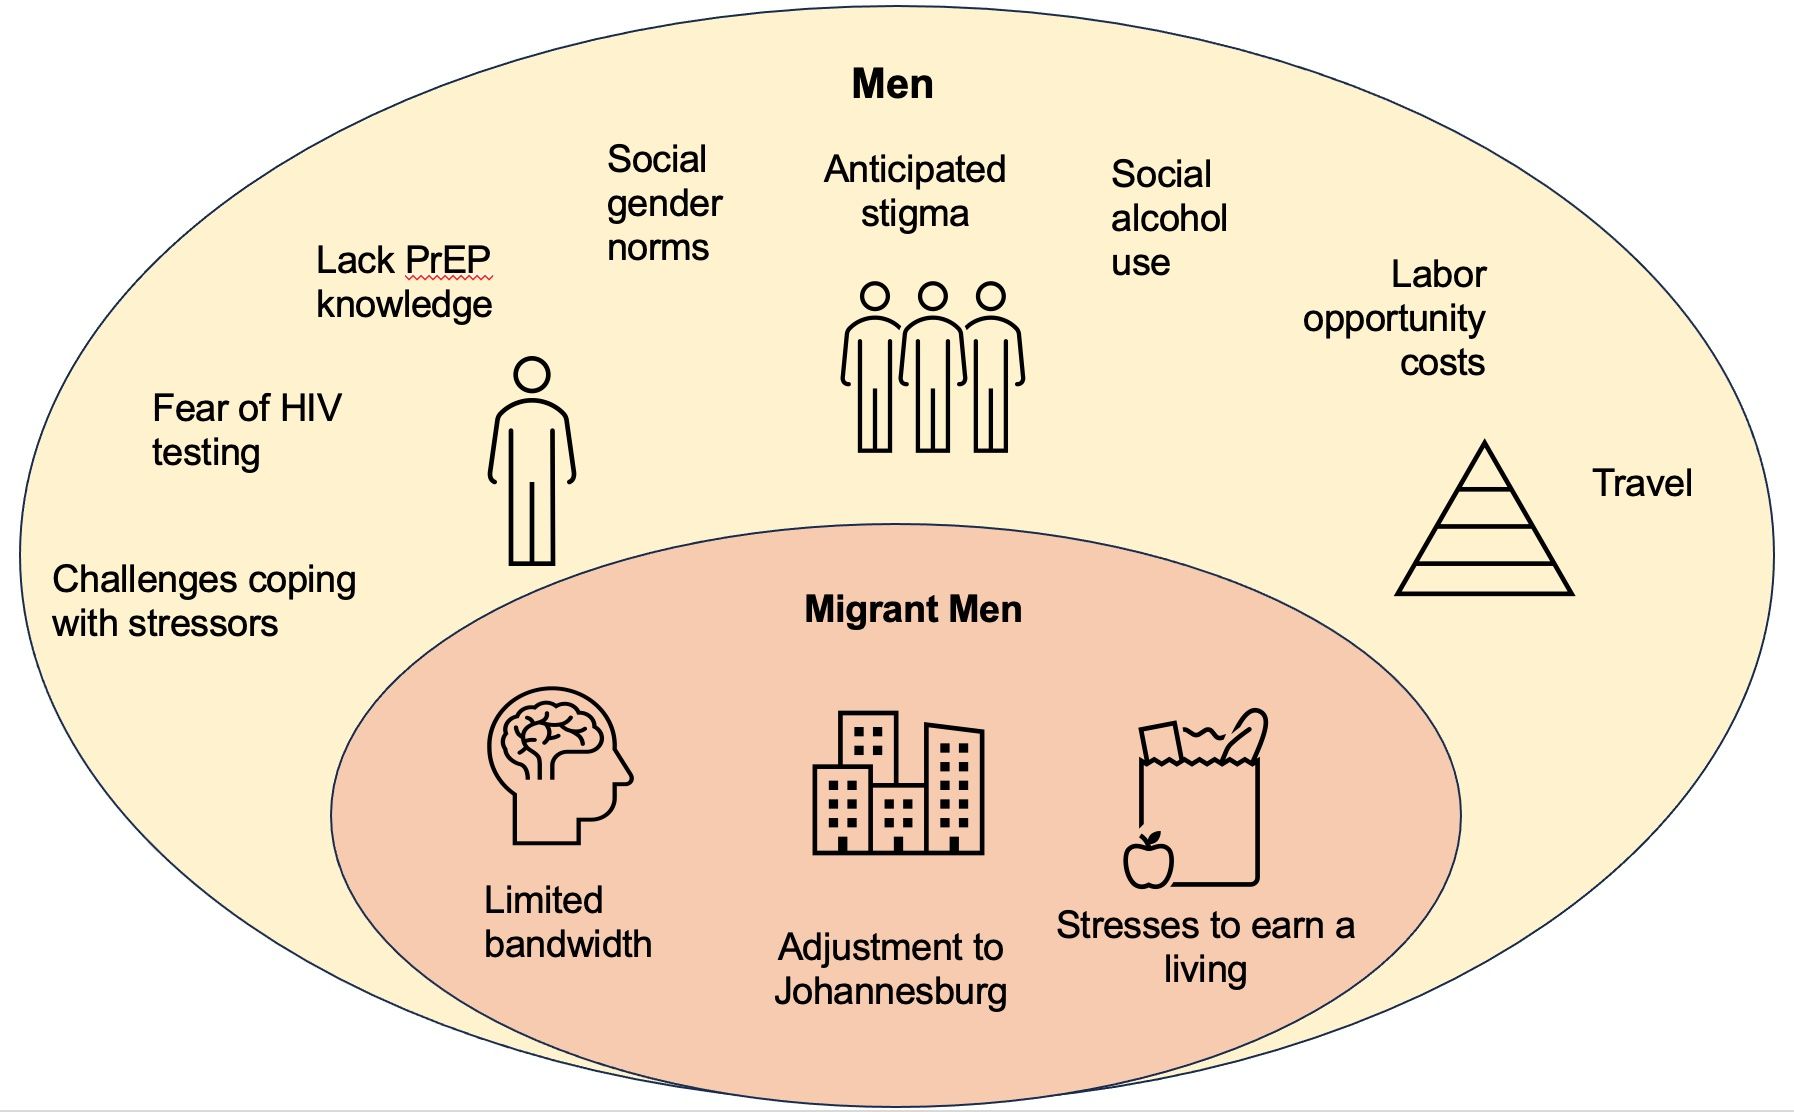 Le stress émotionnel est plus préjudiciable que le virus lui-même" : Une étude qualitative pour comprendre le dépistage du VIH et l'utilisation de la PrEP chez les hommes migrants internes en Afrique du Sud